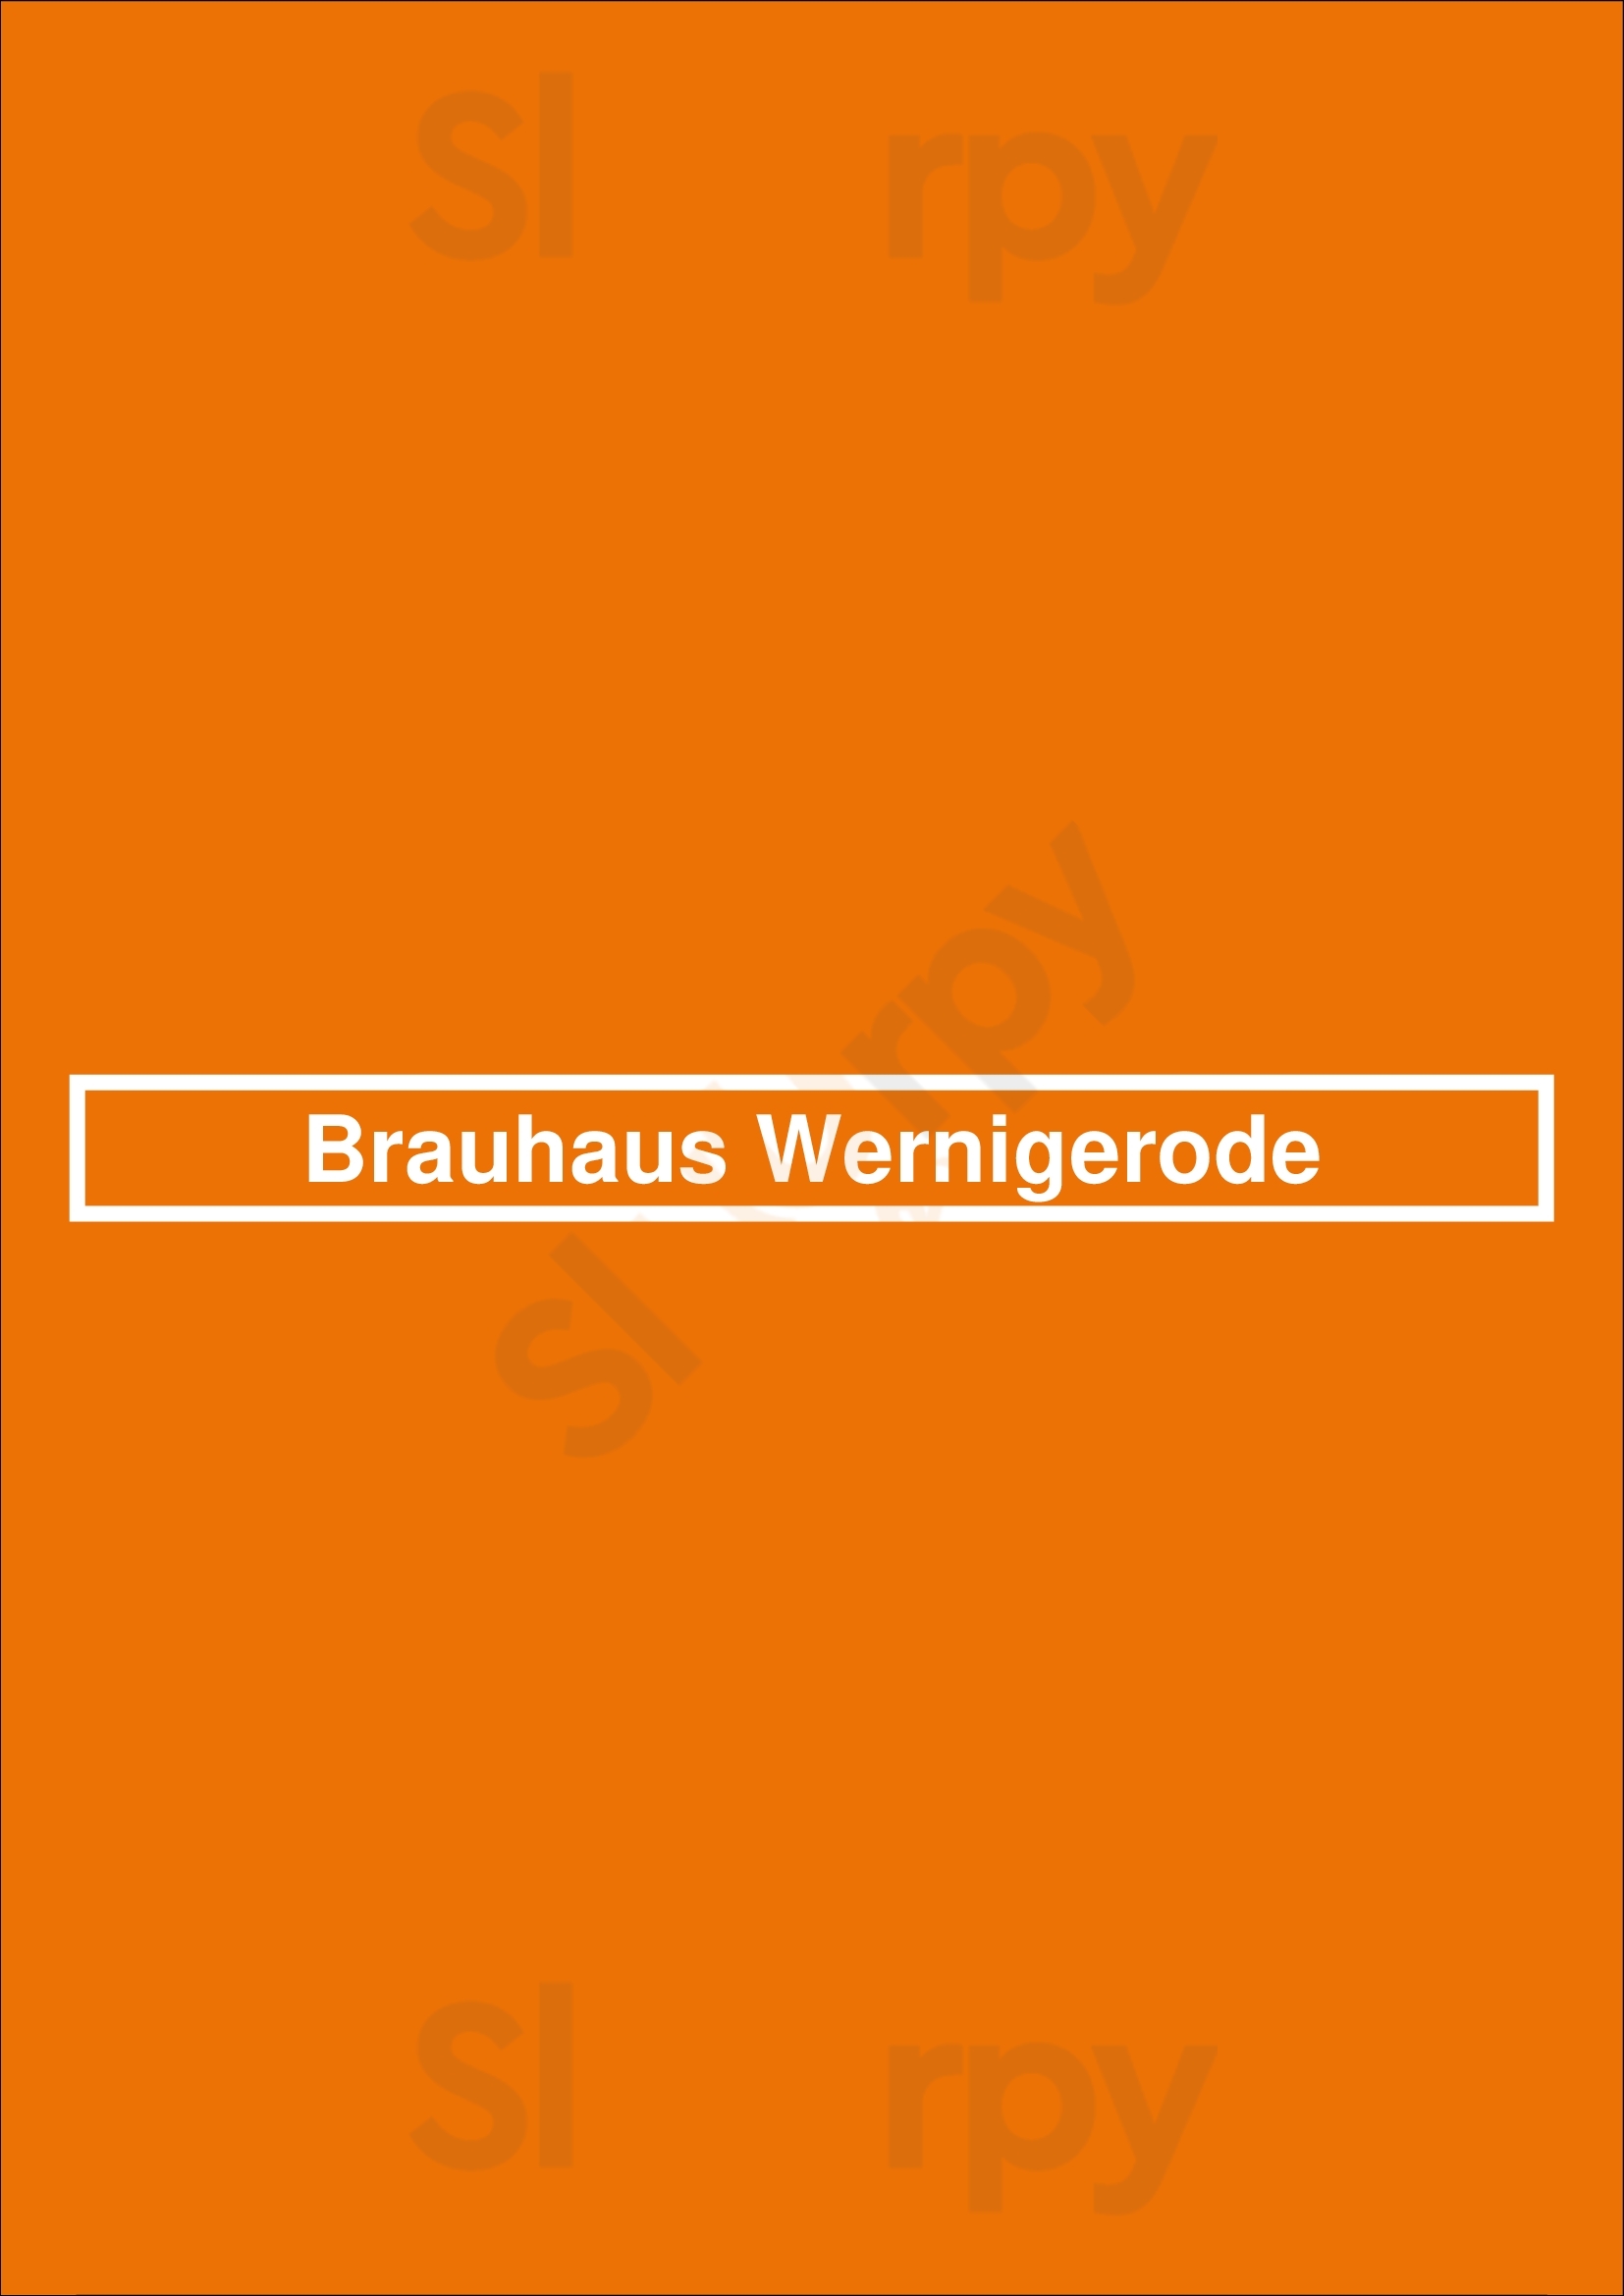 Brauhaus Wernigerode Wernigerode Menu - 1